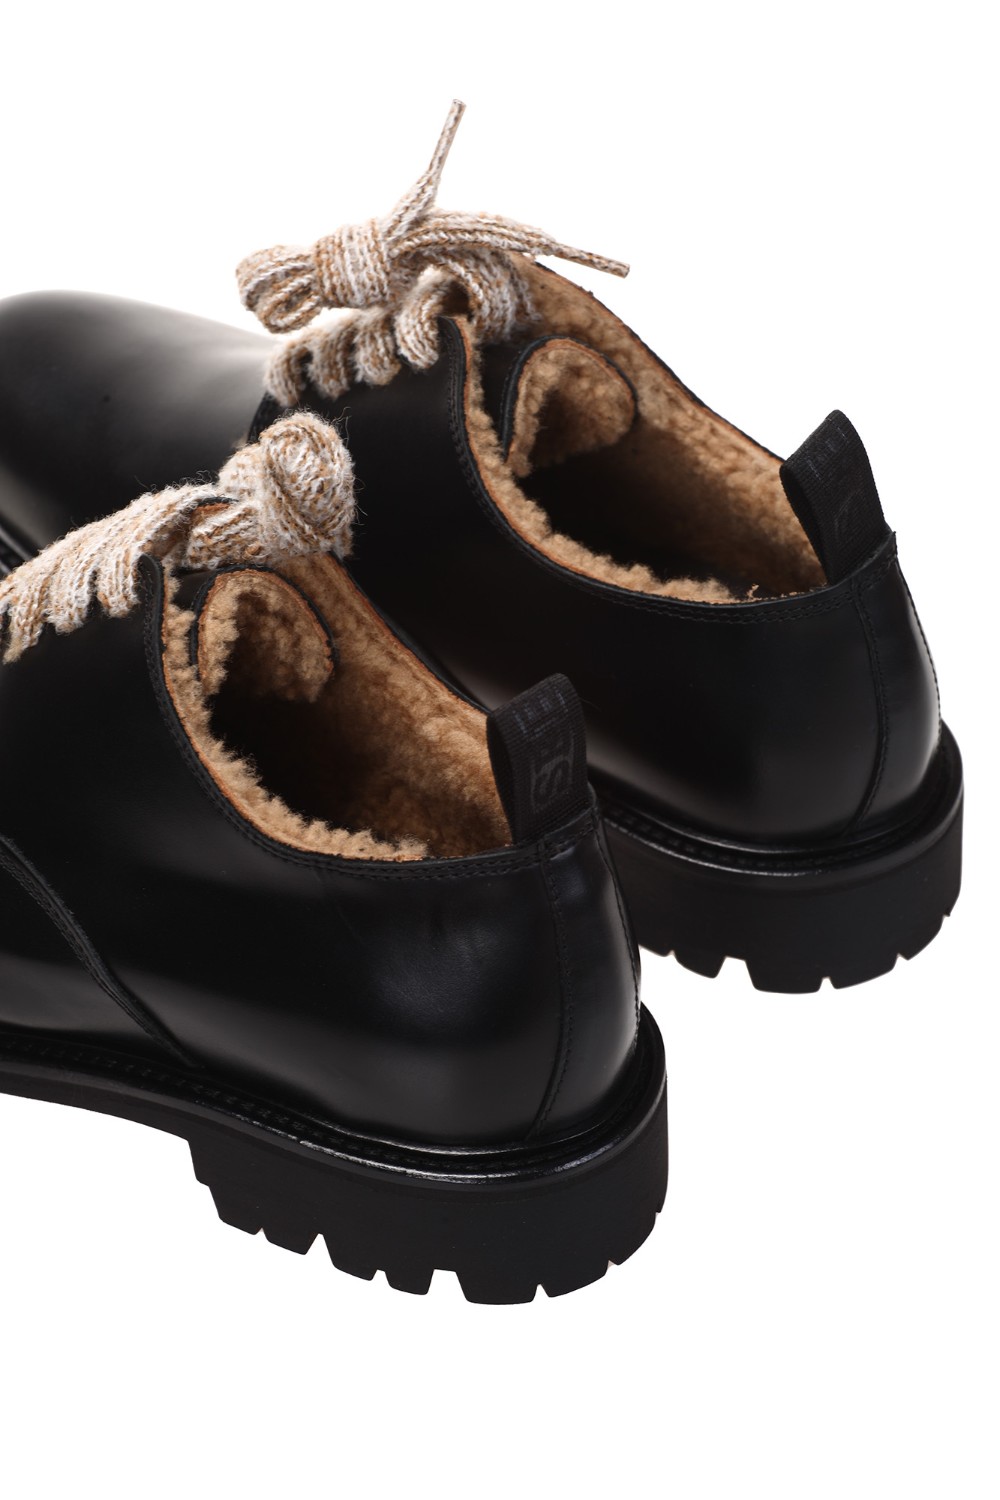 shop SEBOY'S  Scarpe: Seboys scarpe in vitello nero.
Costruzione tradizionale.
Made in Italy dal 1918.
Dust bag in dotazione.
Composizione: 100% Pelle.
Fabbricato in Italia.. 726 G ROCCIA HORSE-N number 160621